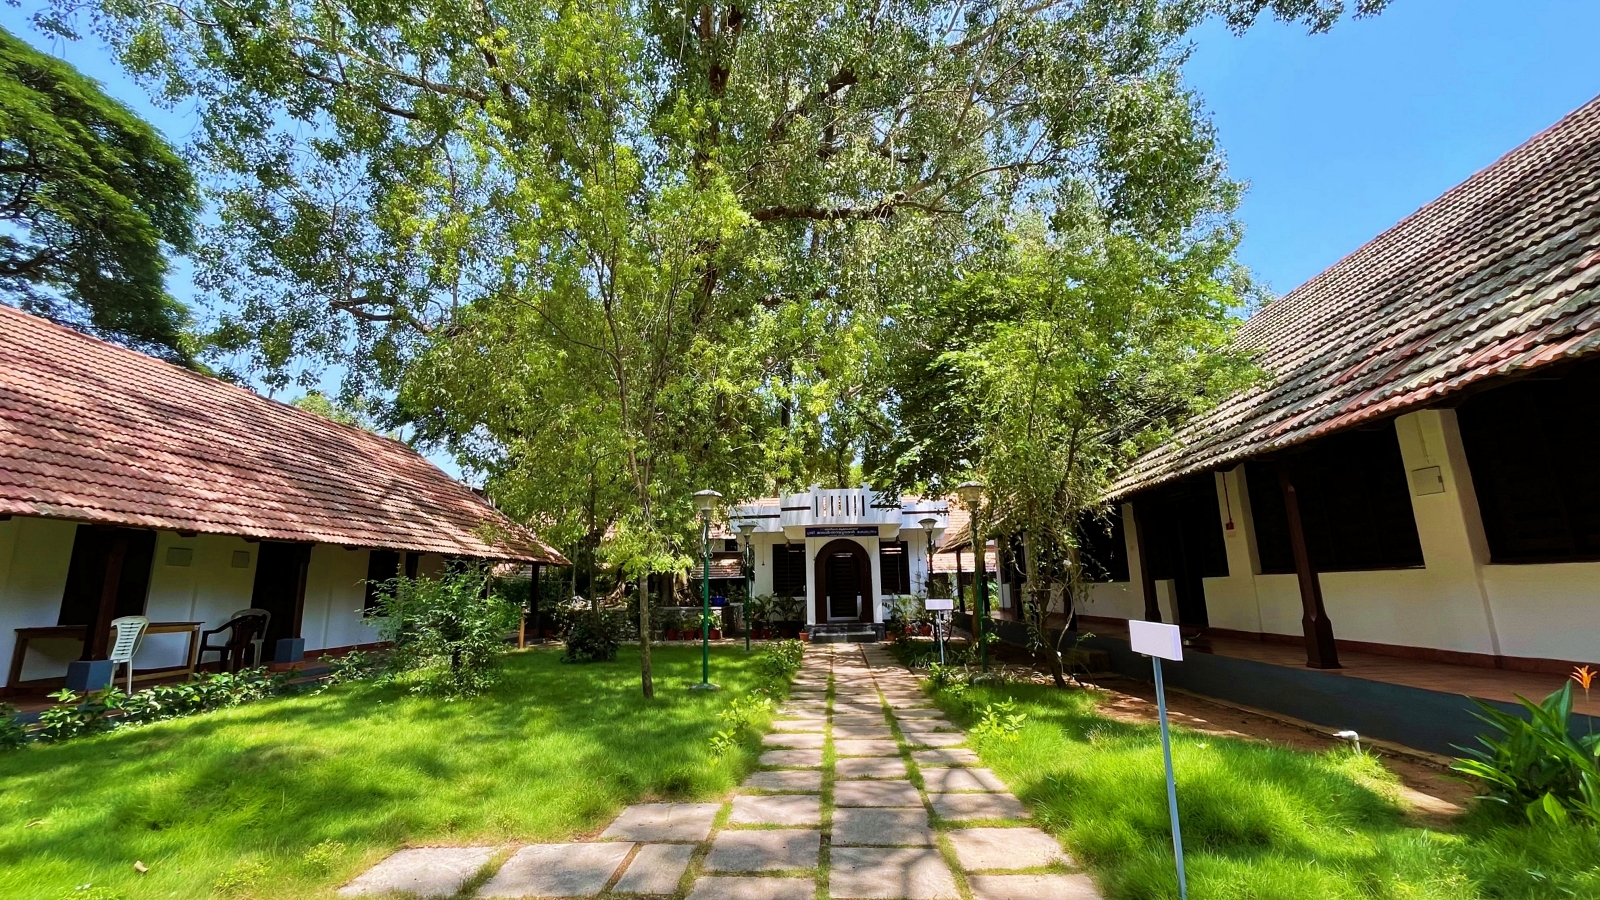 Palmleaf Manuscript Museum Trivandrum